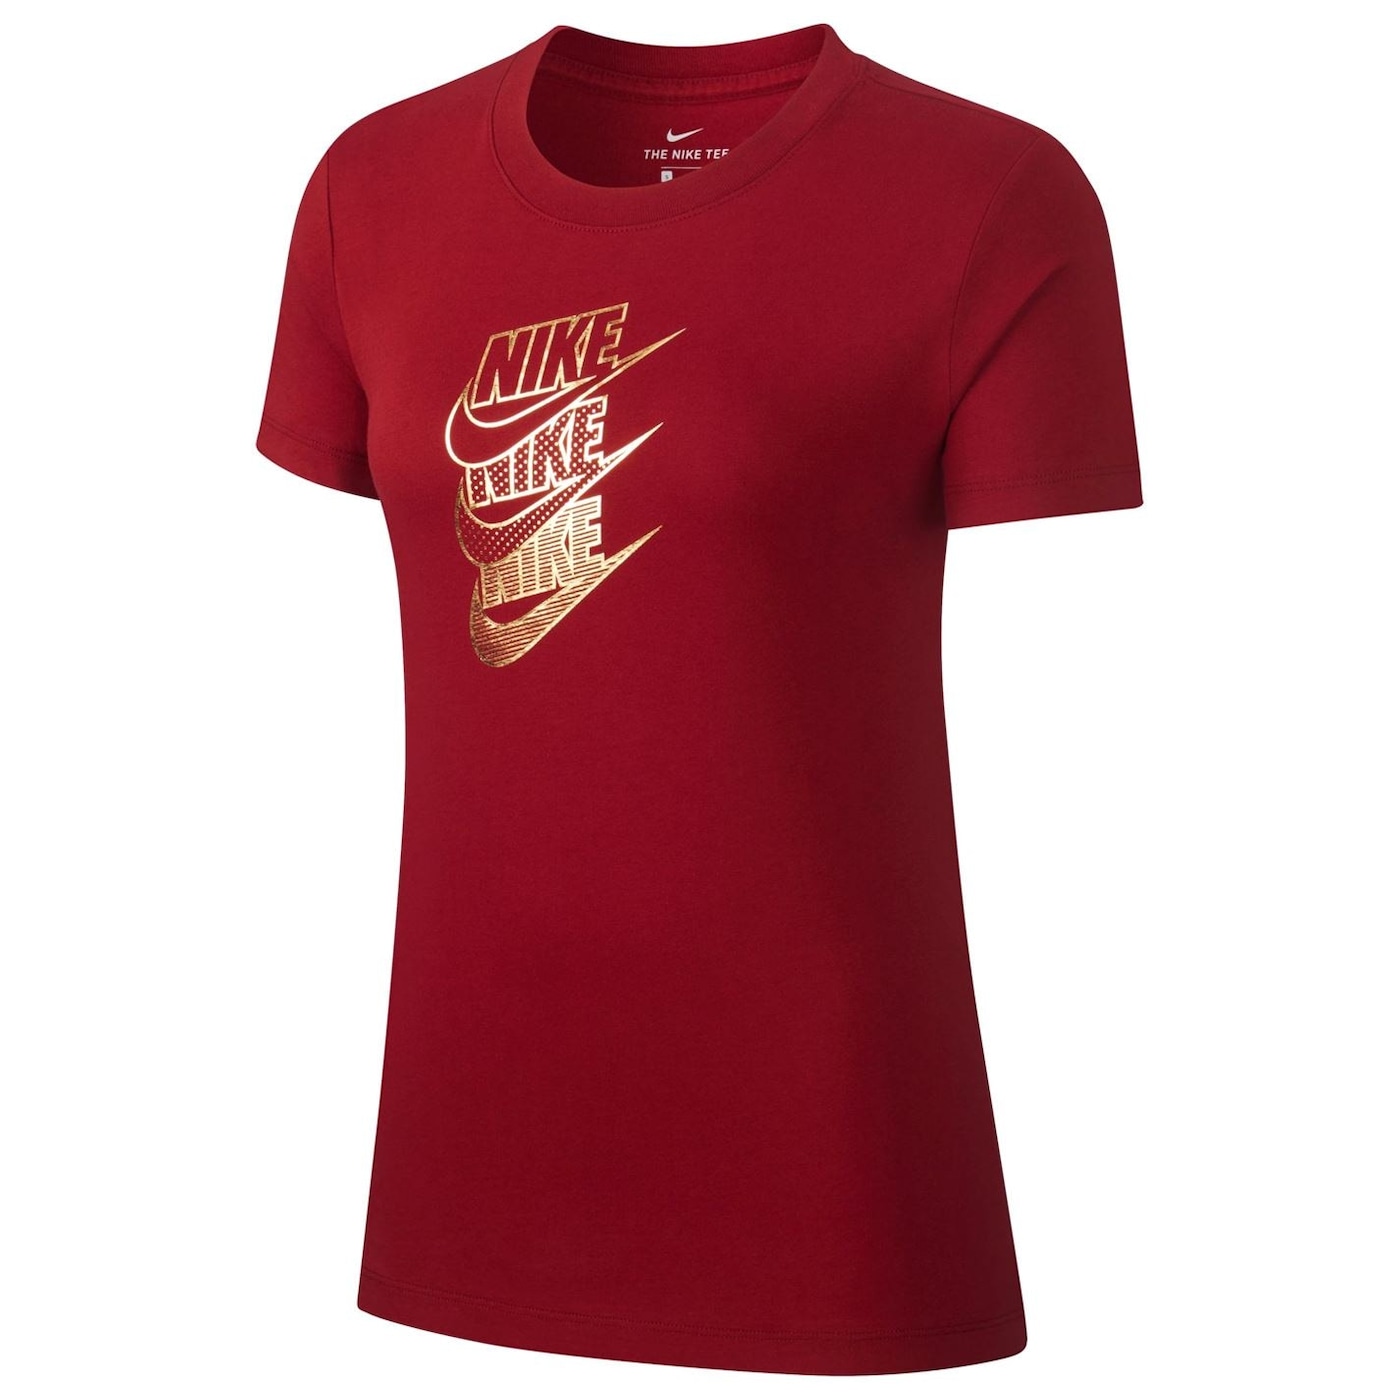 Жени  Дамско облекло  Блузи  С къс ръкав Nike Shine Short Sleeve T Shirt Ladies 1035345-6279485